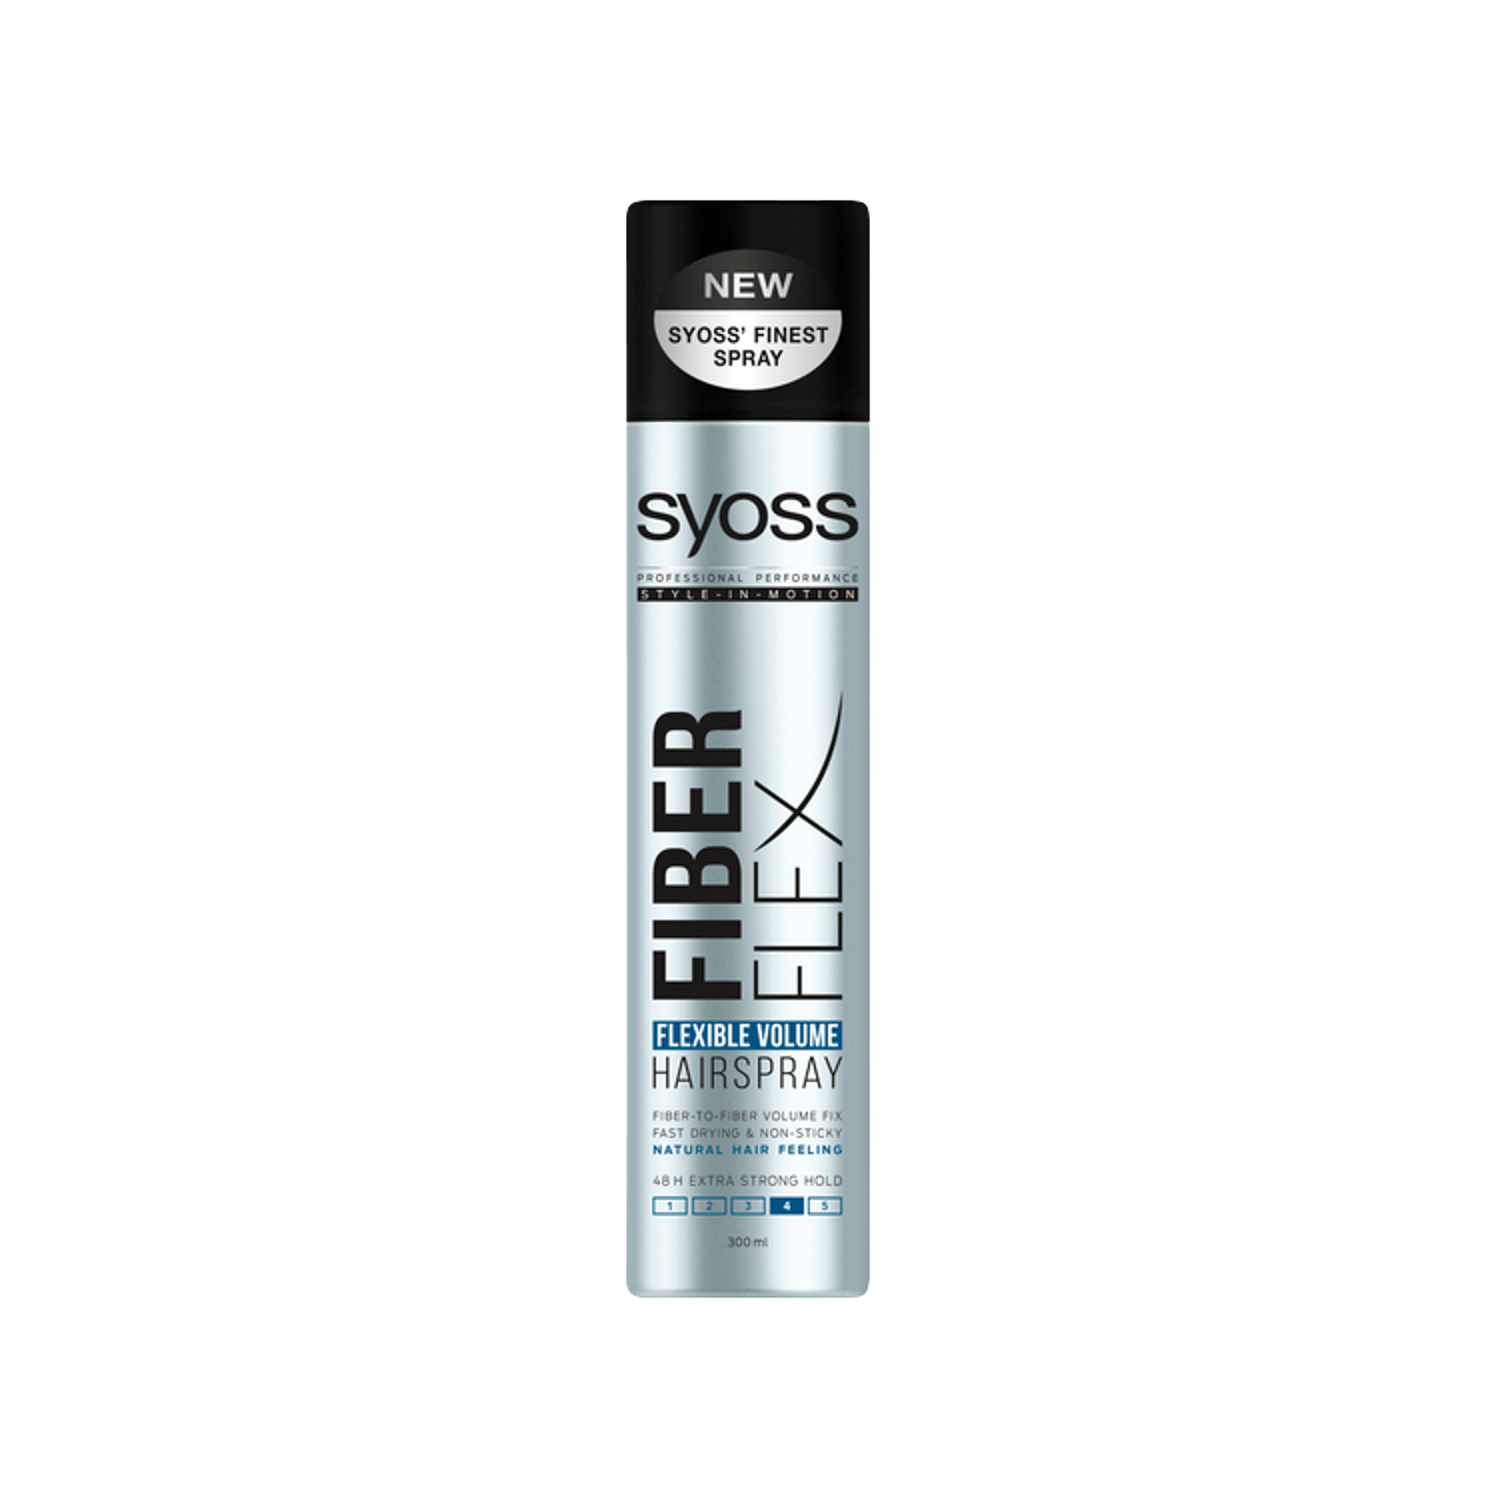 Лак для волос экстрасильного объема Syoss Fiberflex, 300 мл fiber flexible bronchoscope endoscope